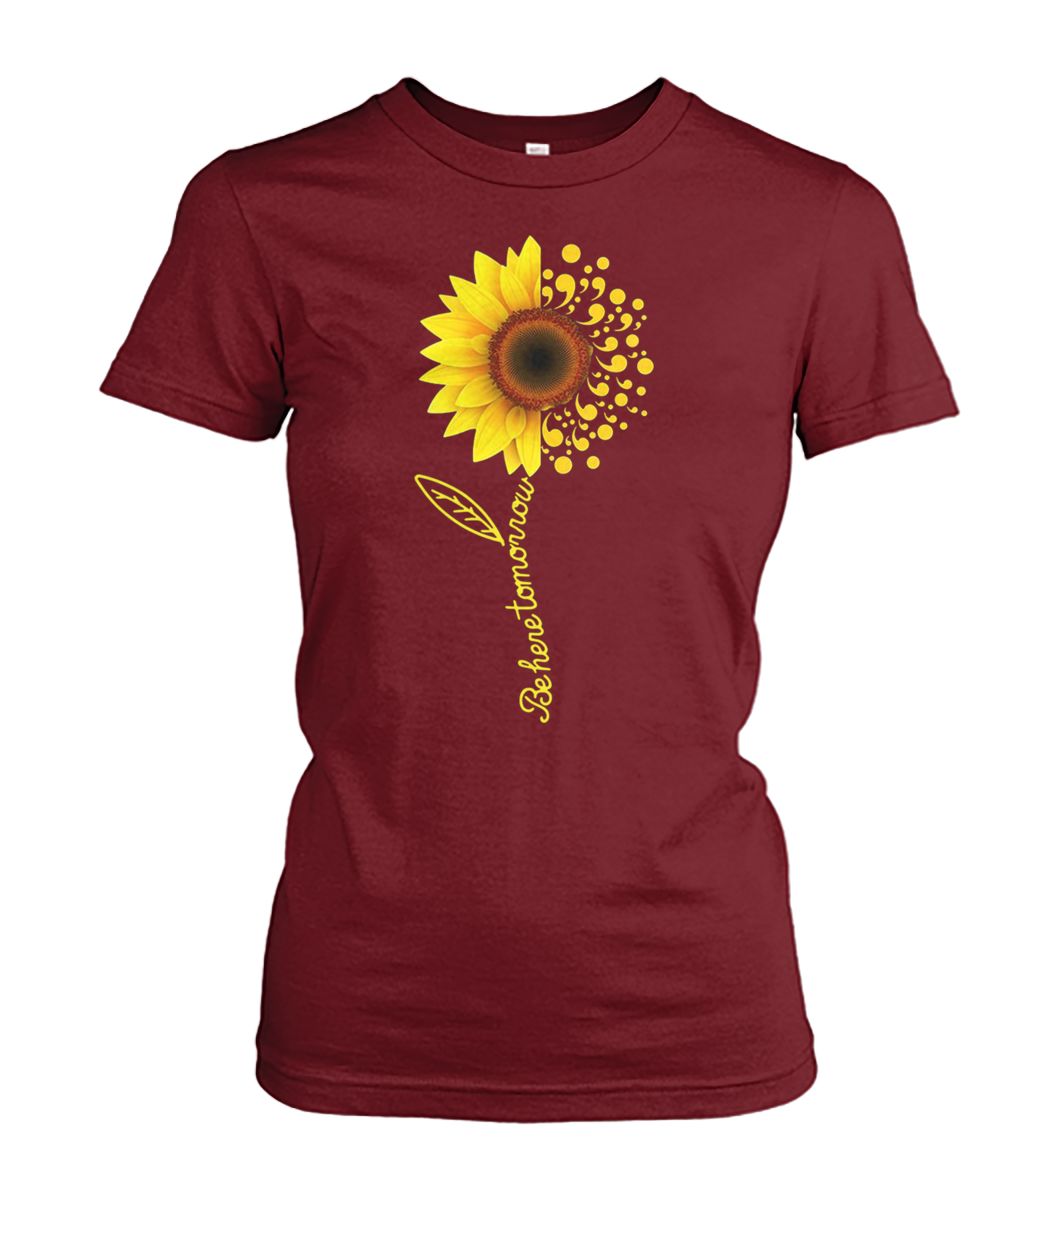 Comma sunflower be here tomorrow shirt and crew neck sweatshirt